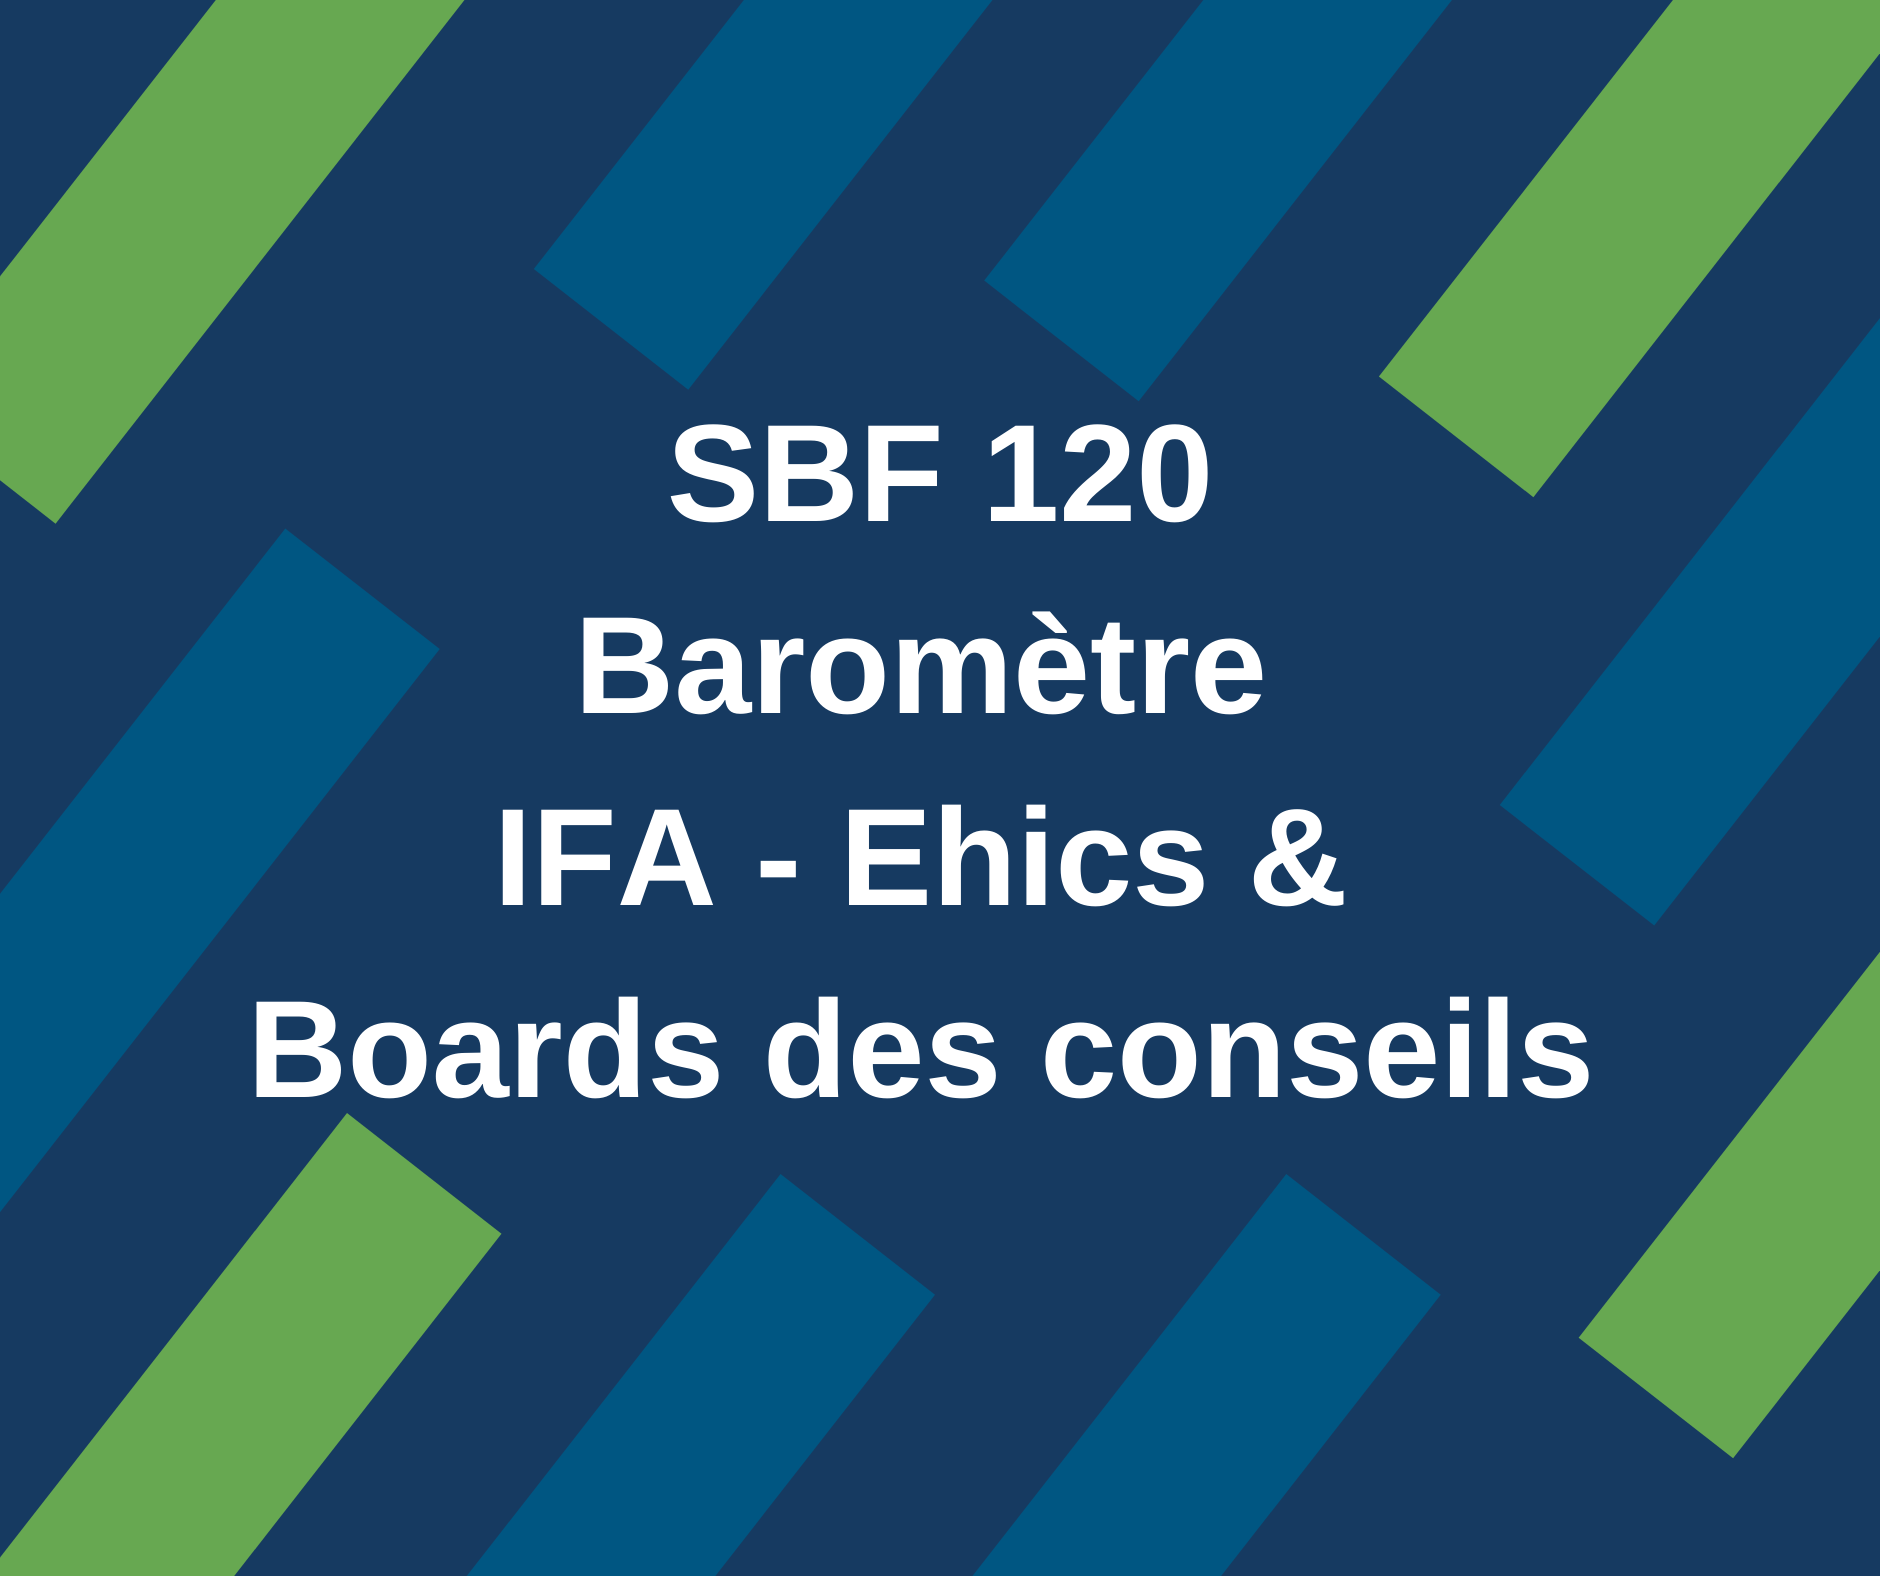 Baromètre IFA-Ethics & Boards des conseils 2021